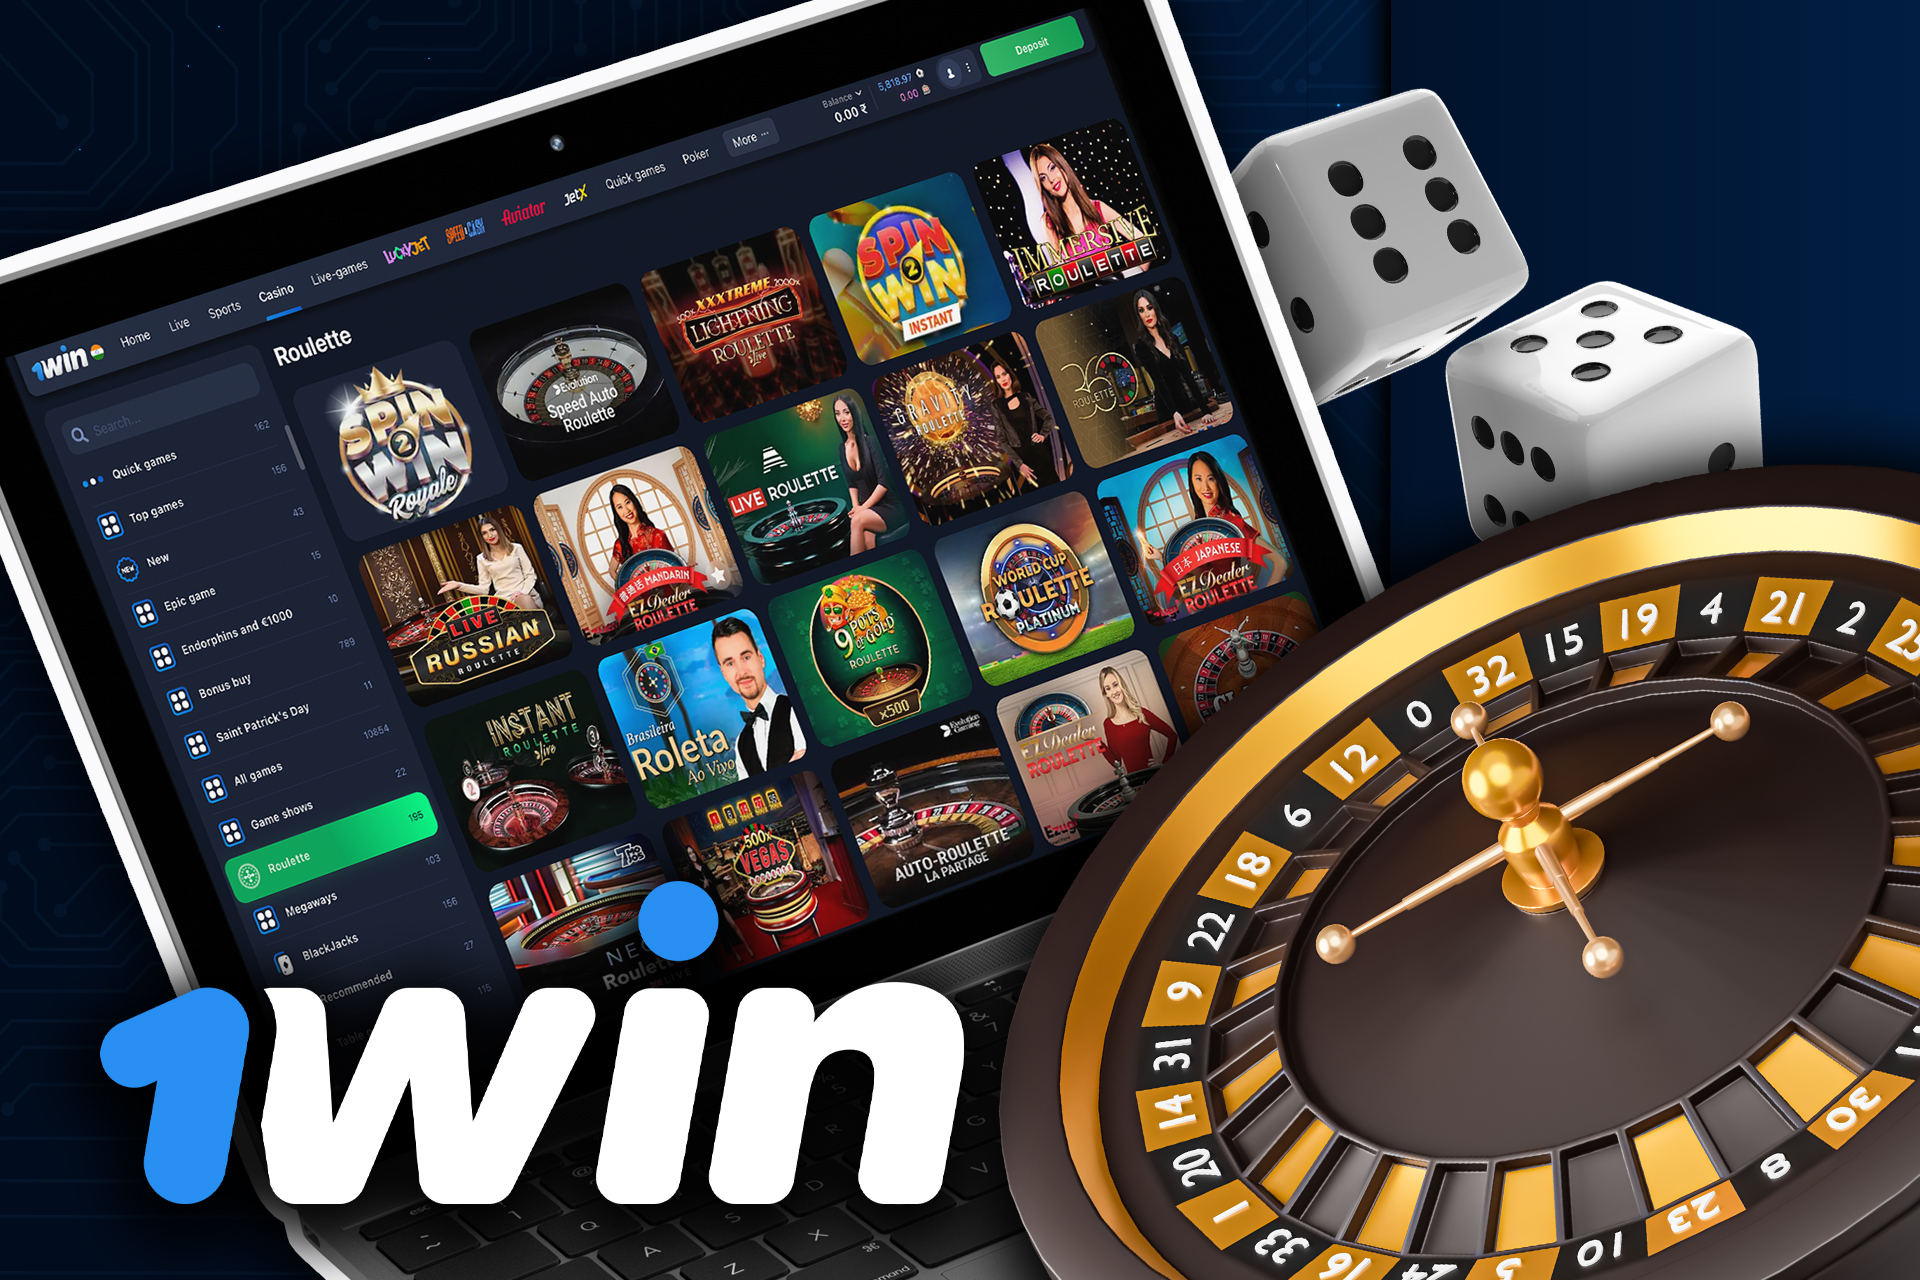 Juegue al juego de casino más tradicional en 1win: la ruleta.